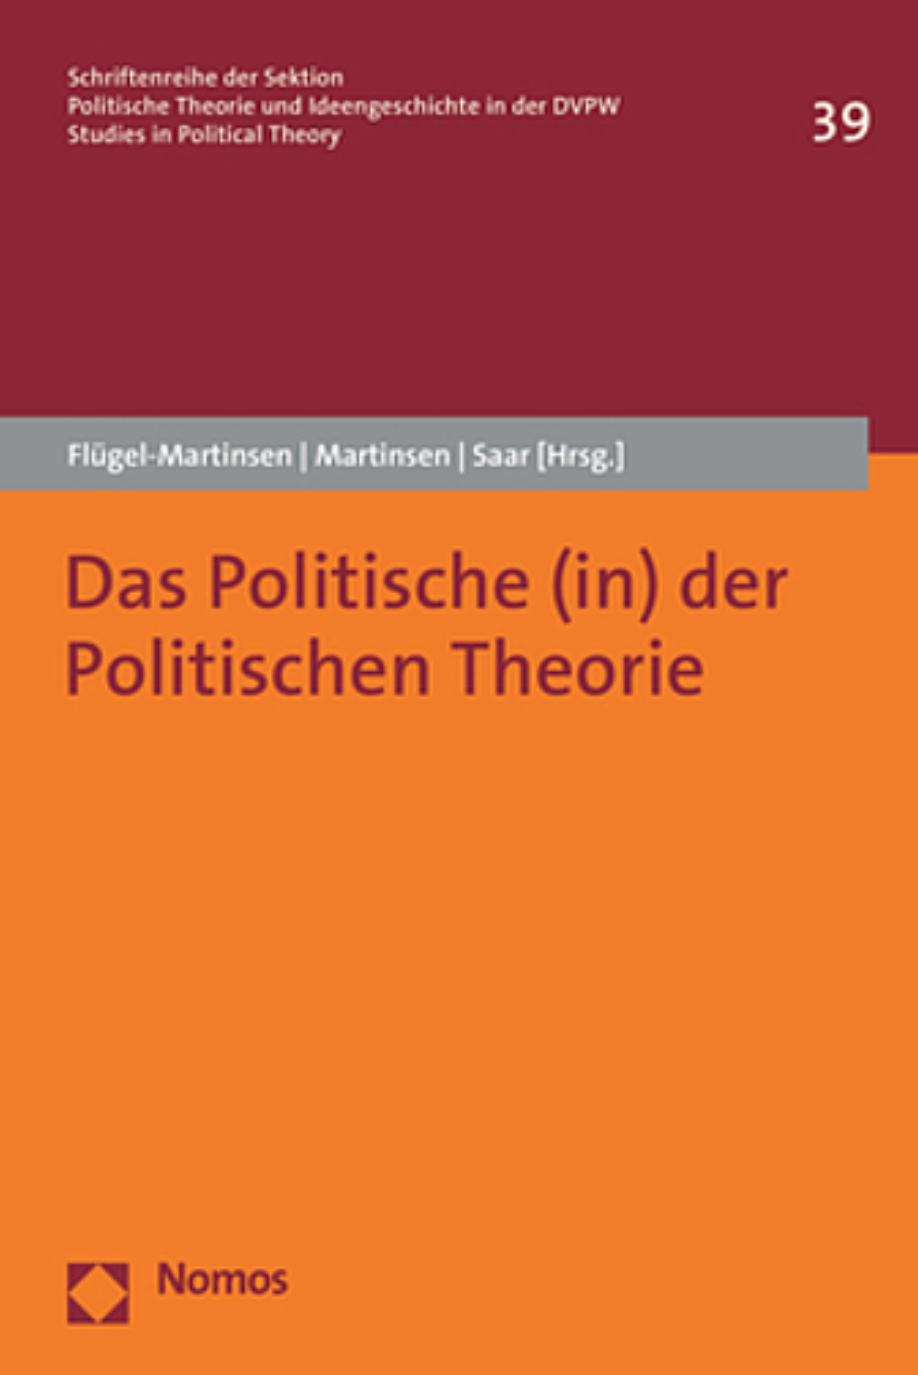 cover "das politische (in) der Politischen Theorie